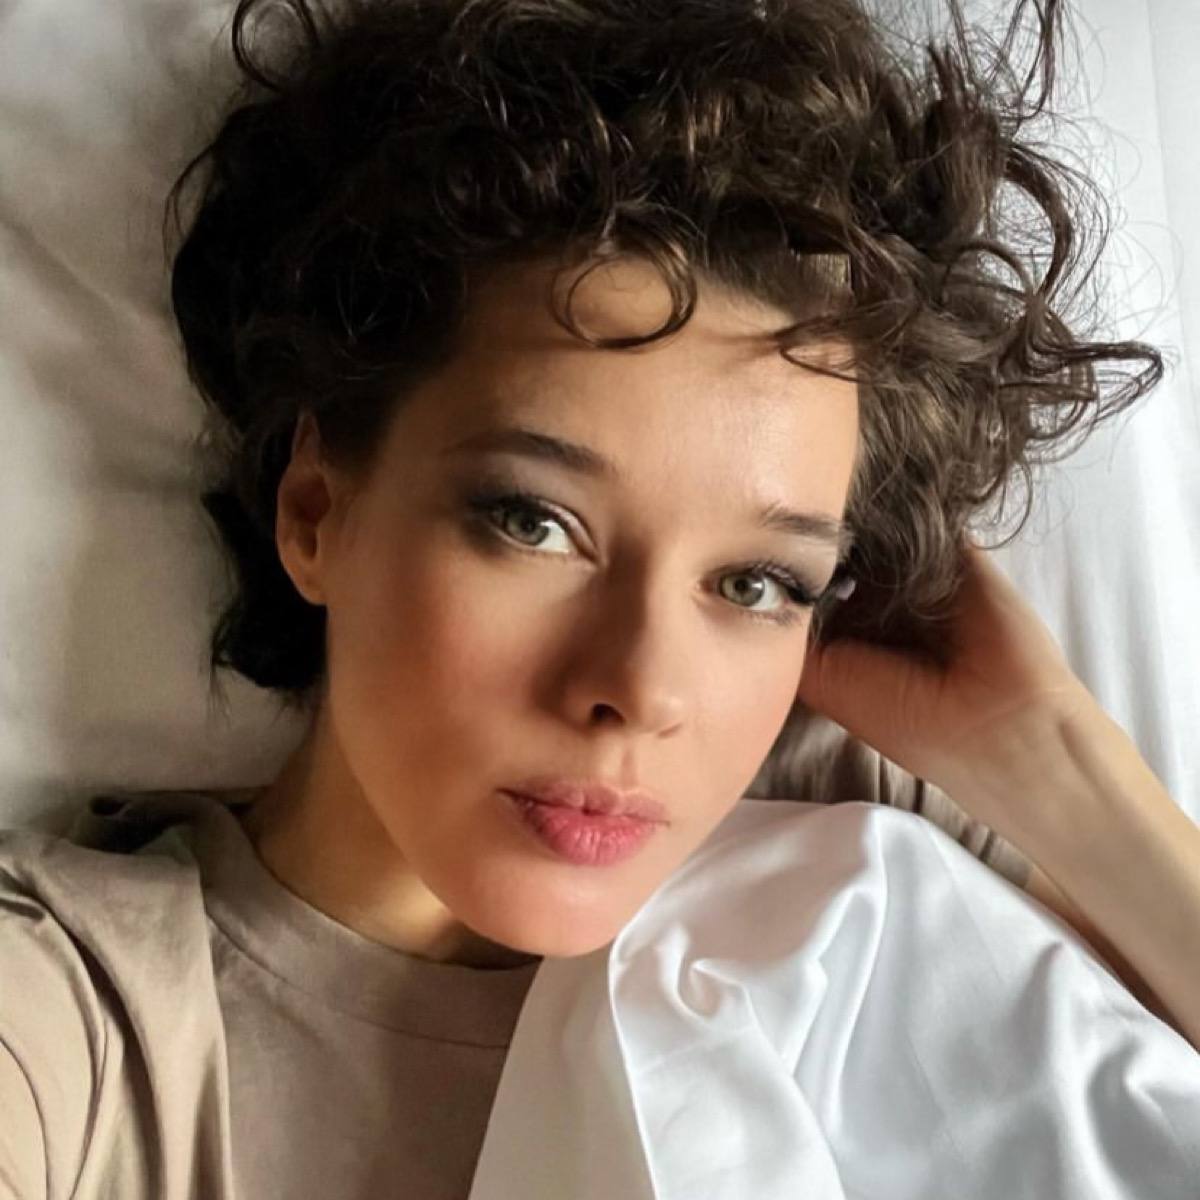 Катерина Шпица прокомментировала свое попадание в список самых некрасивых  актрис России - Вокруг ТВ.